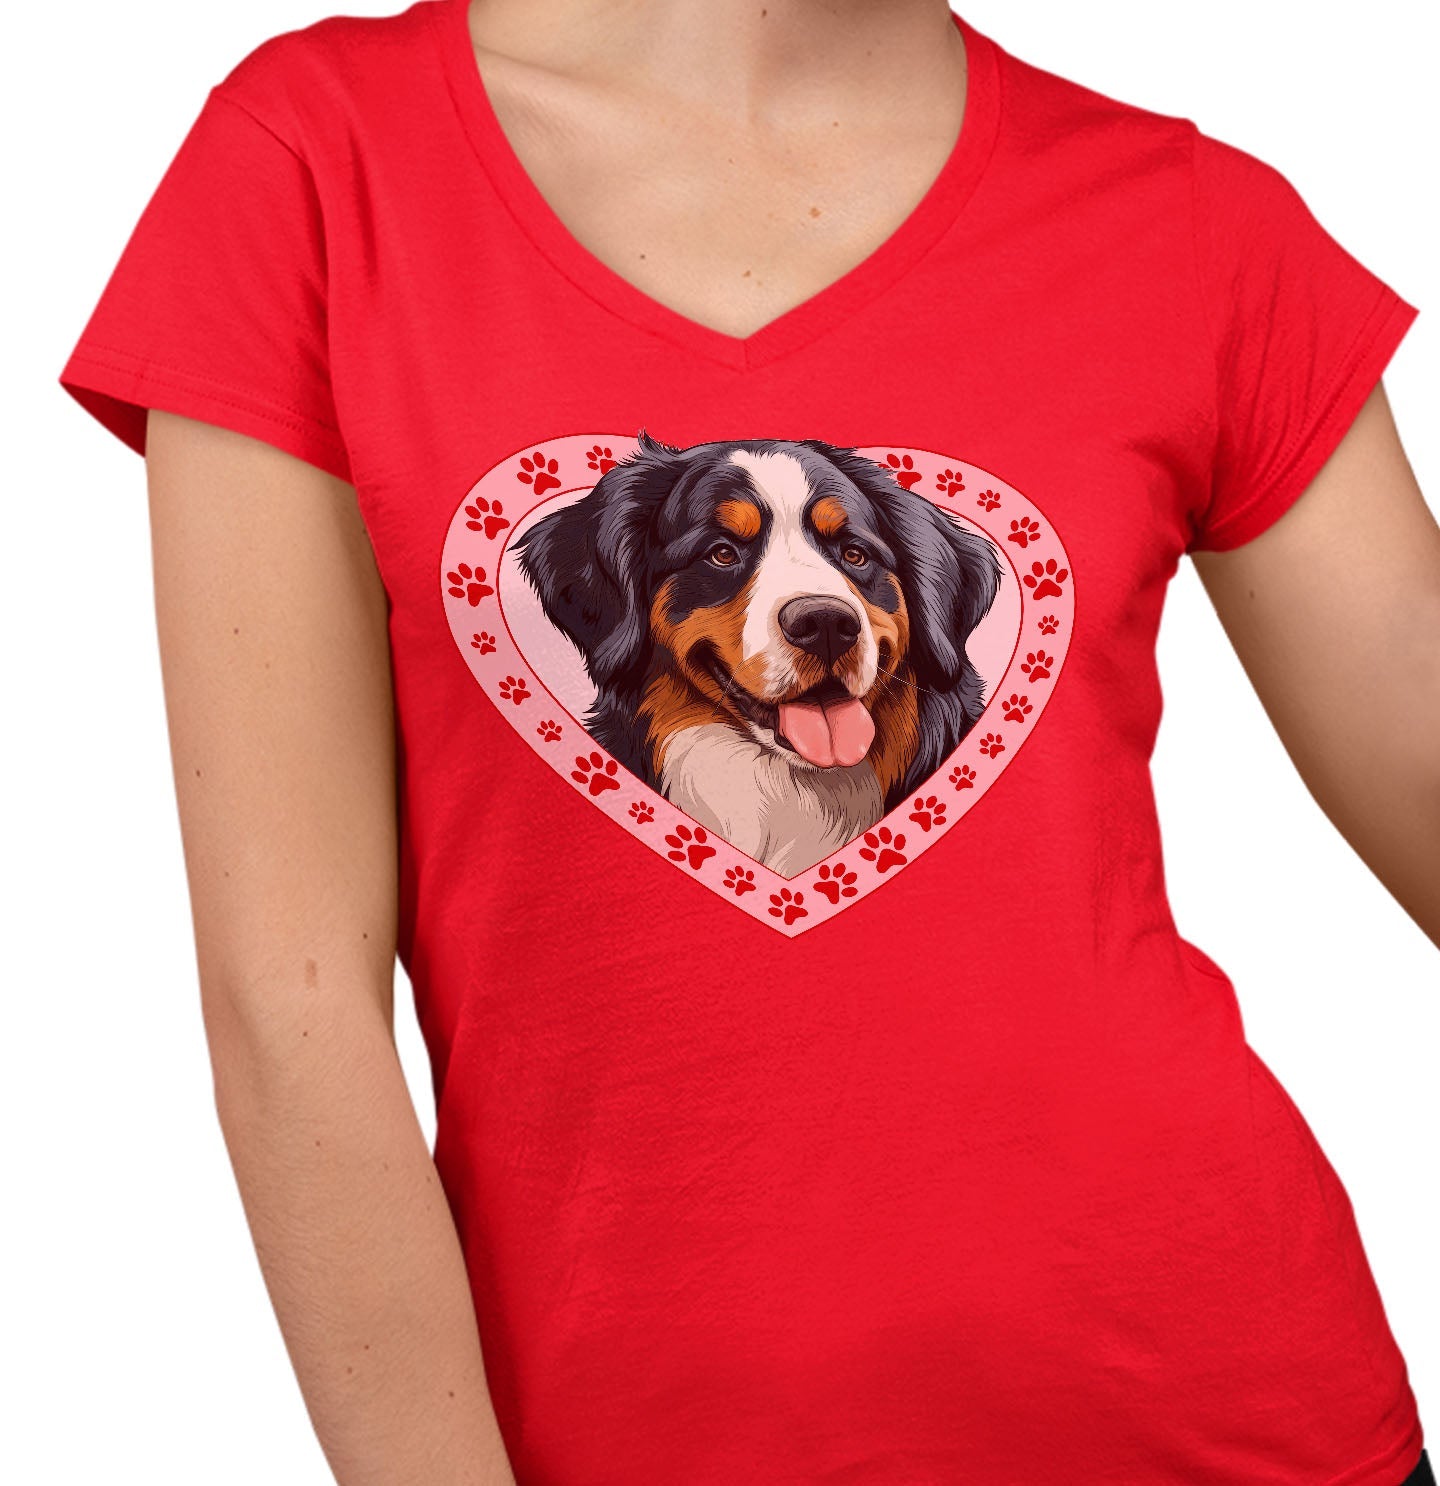 Bernese Mountain Dog Illustration In Heart - Women's V-Neck T-Shirt